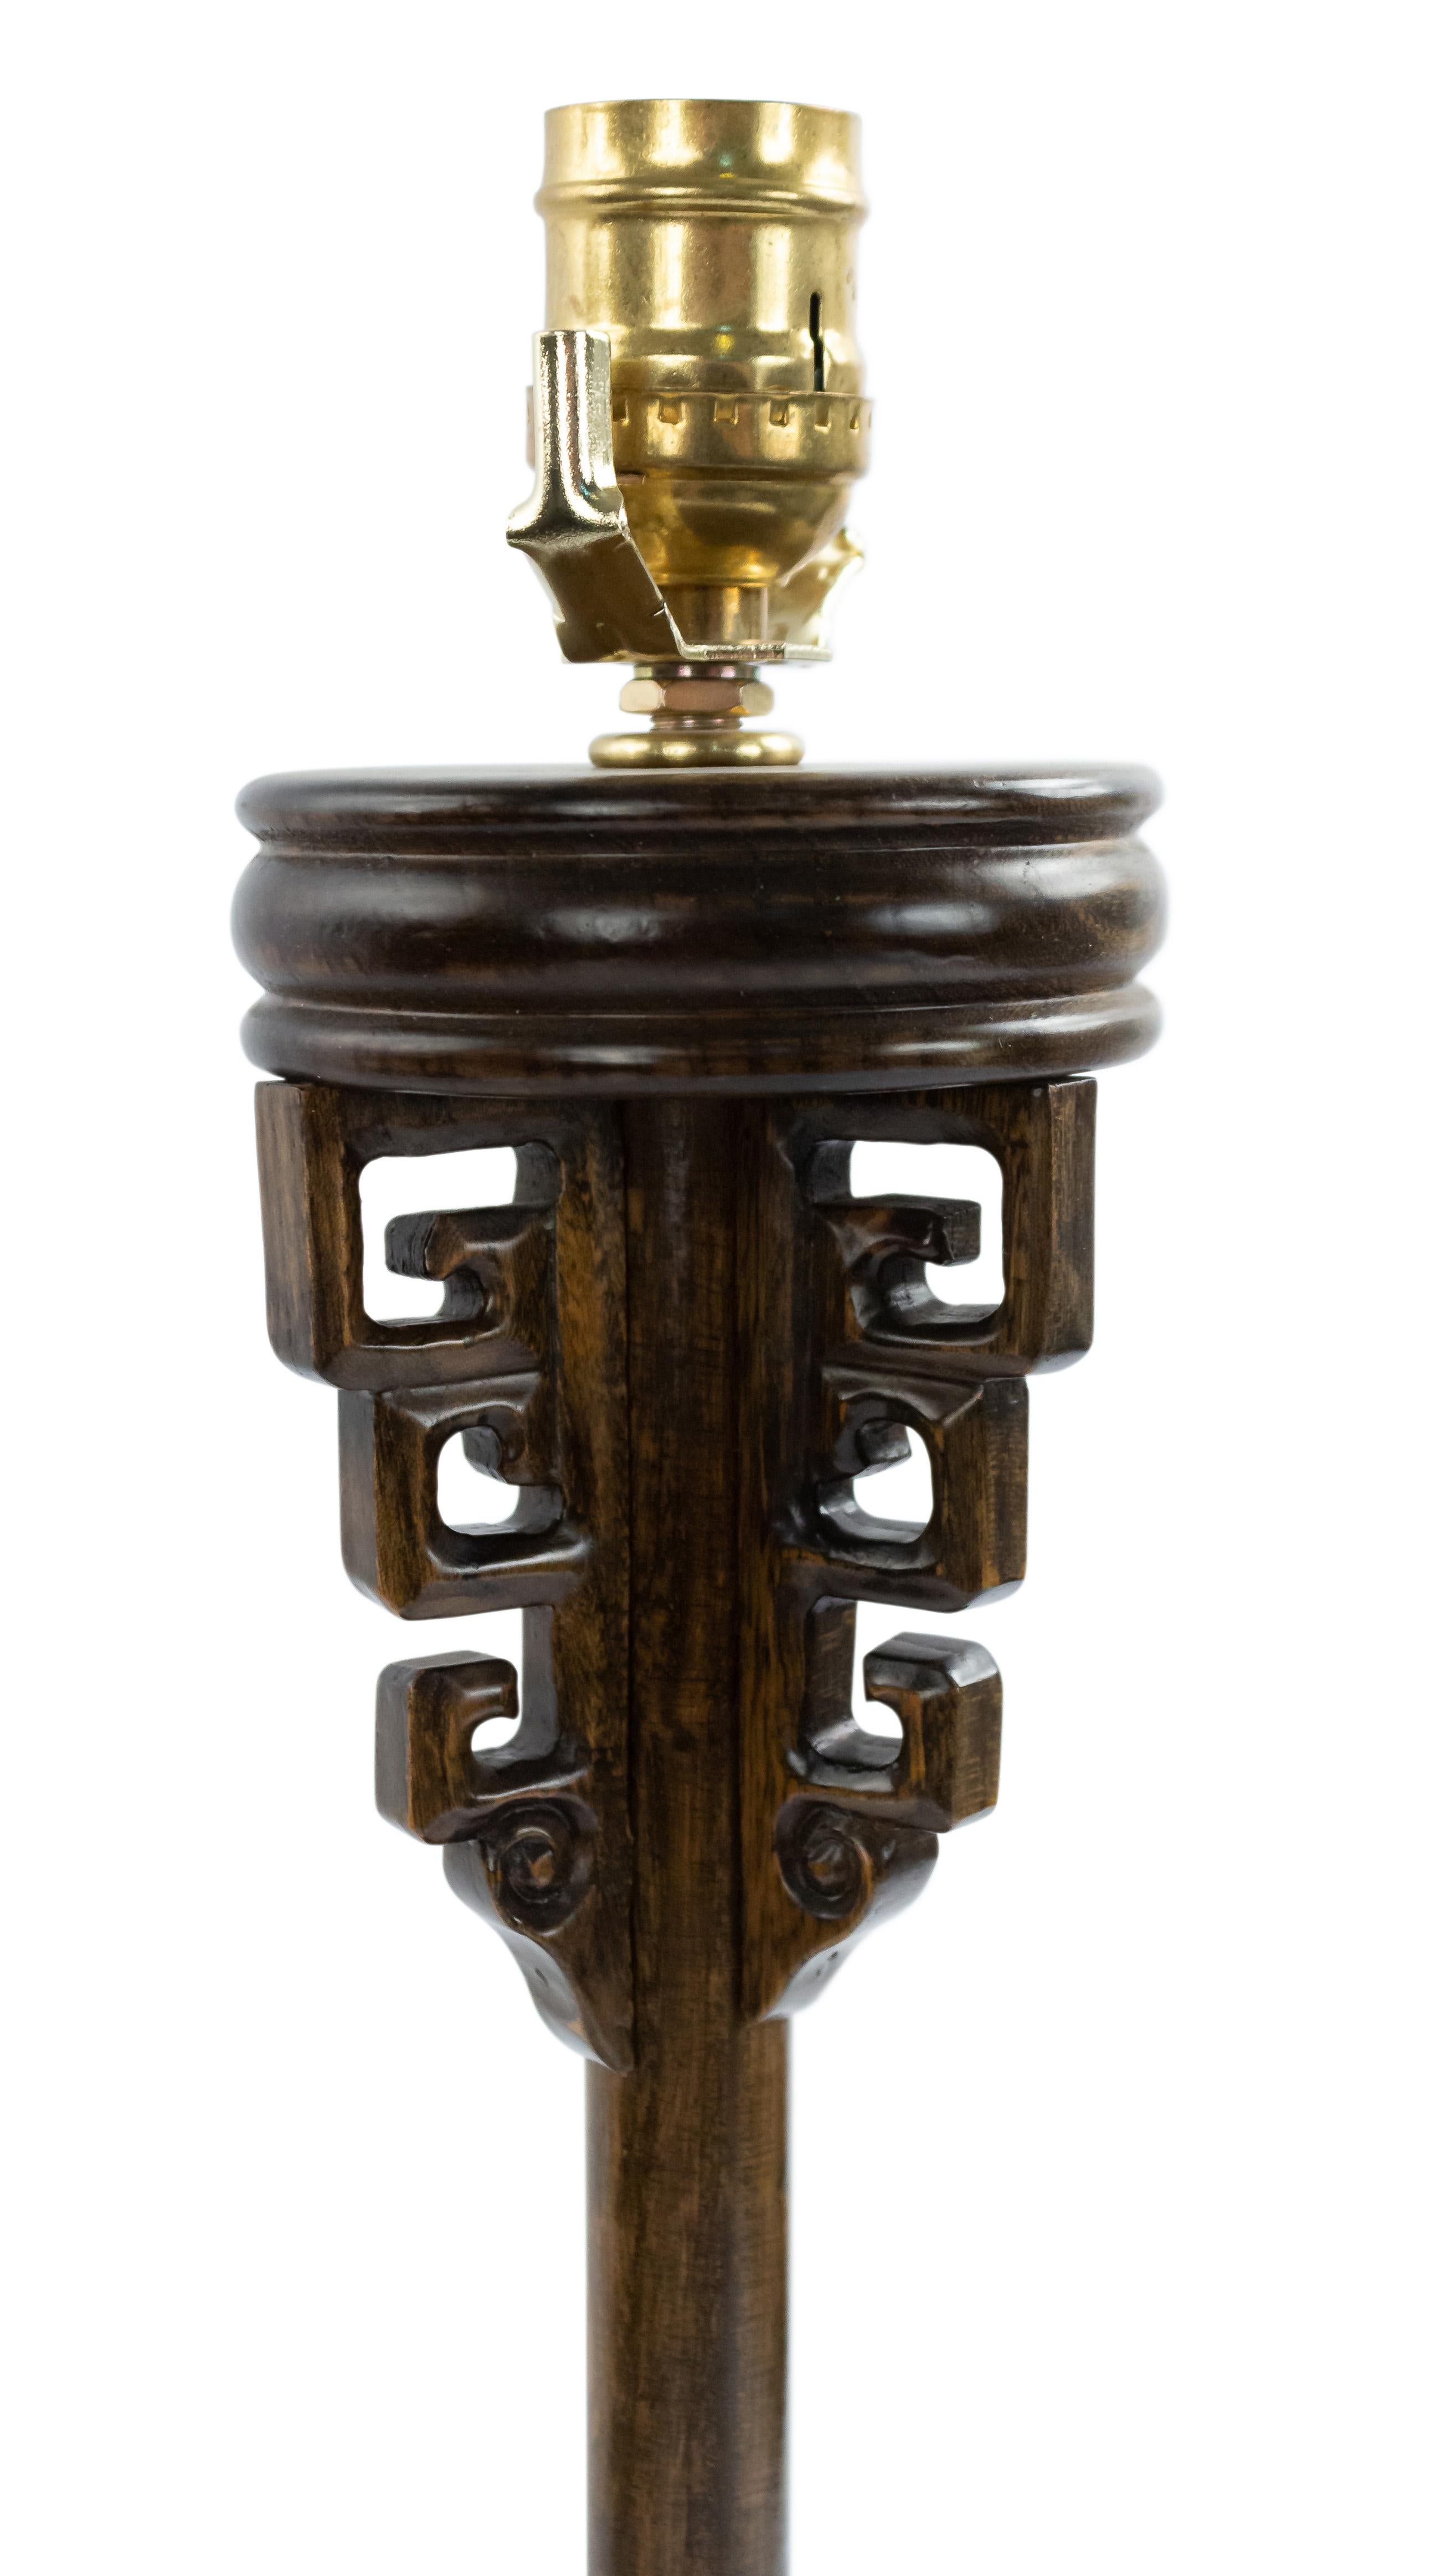 Lampe en bois de style chinois du milieu du siècle dernier, avec des motifs sculptés.